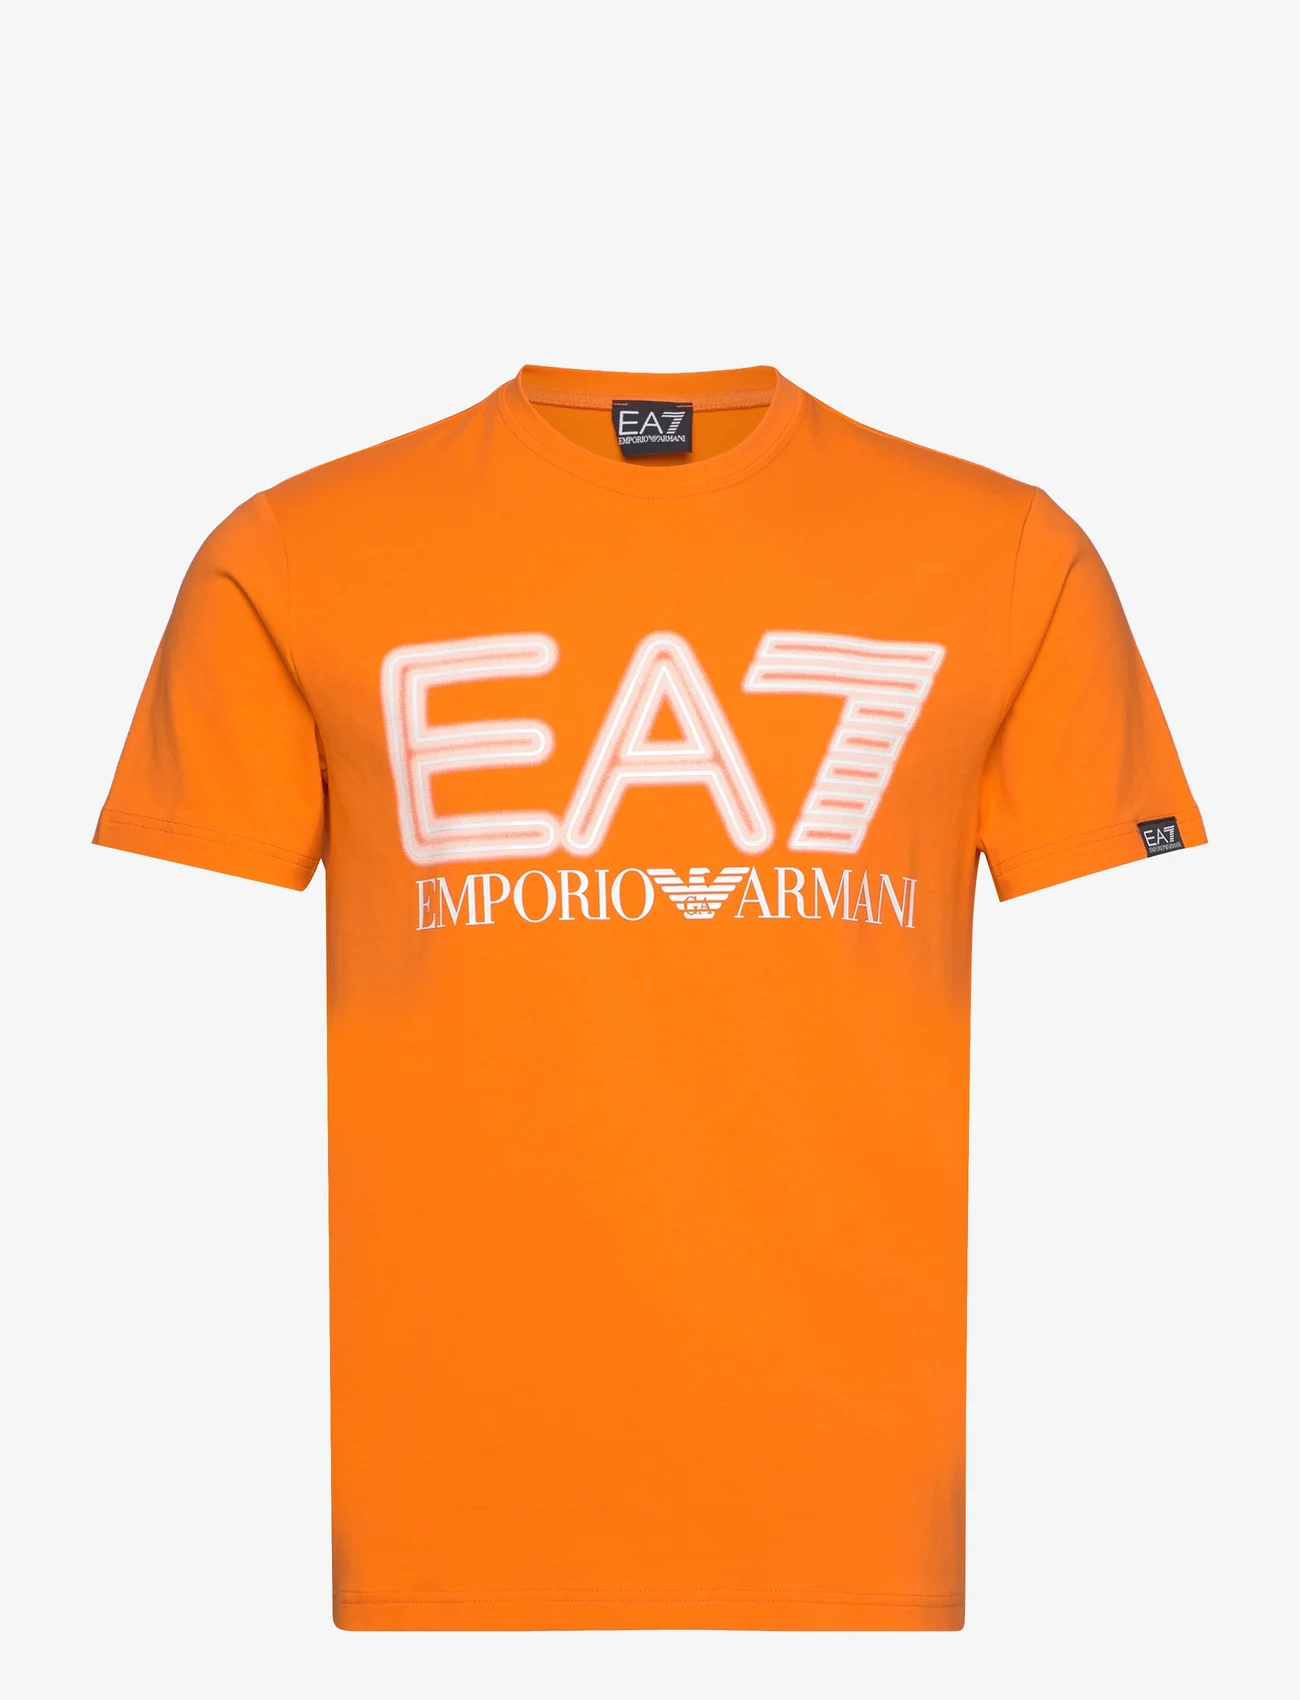 EA7 - T-SHIRT - kortermede t-skjorter - orange tiger - 0